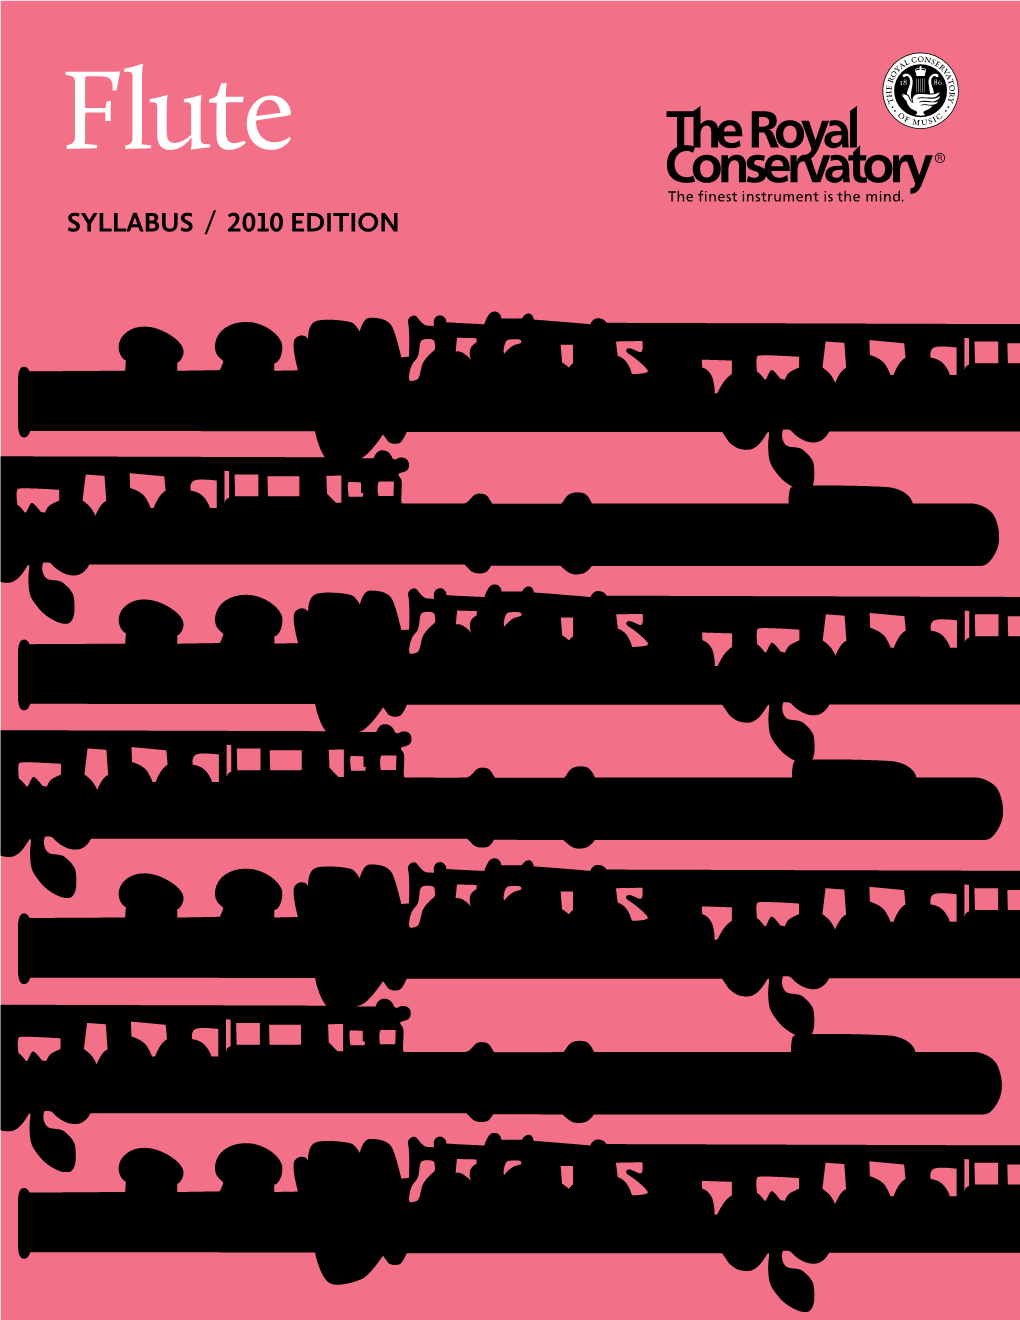 RCM Flute Syllabus / 2010 Edition